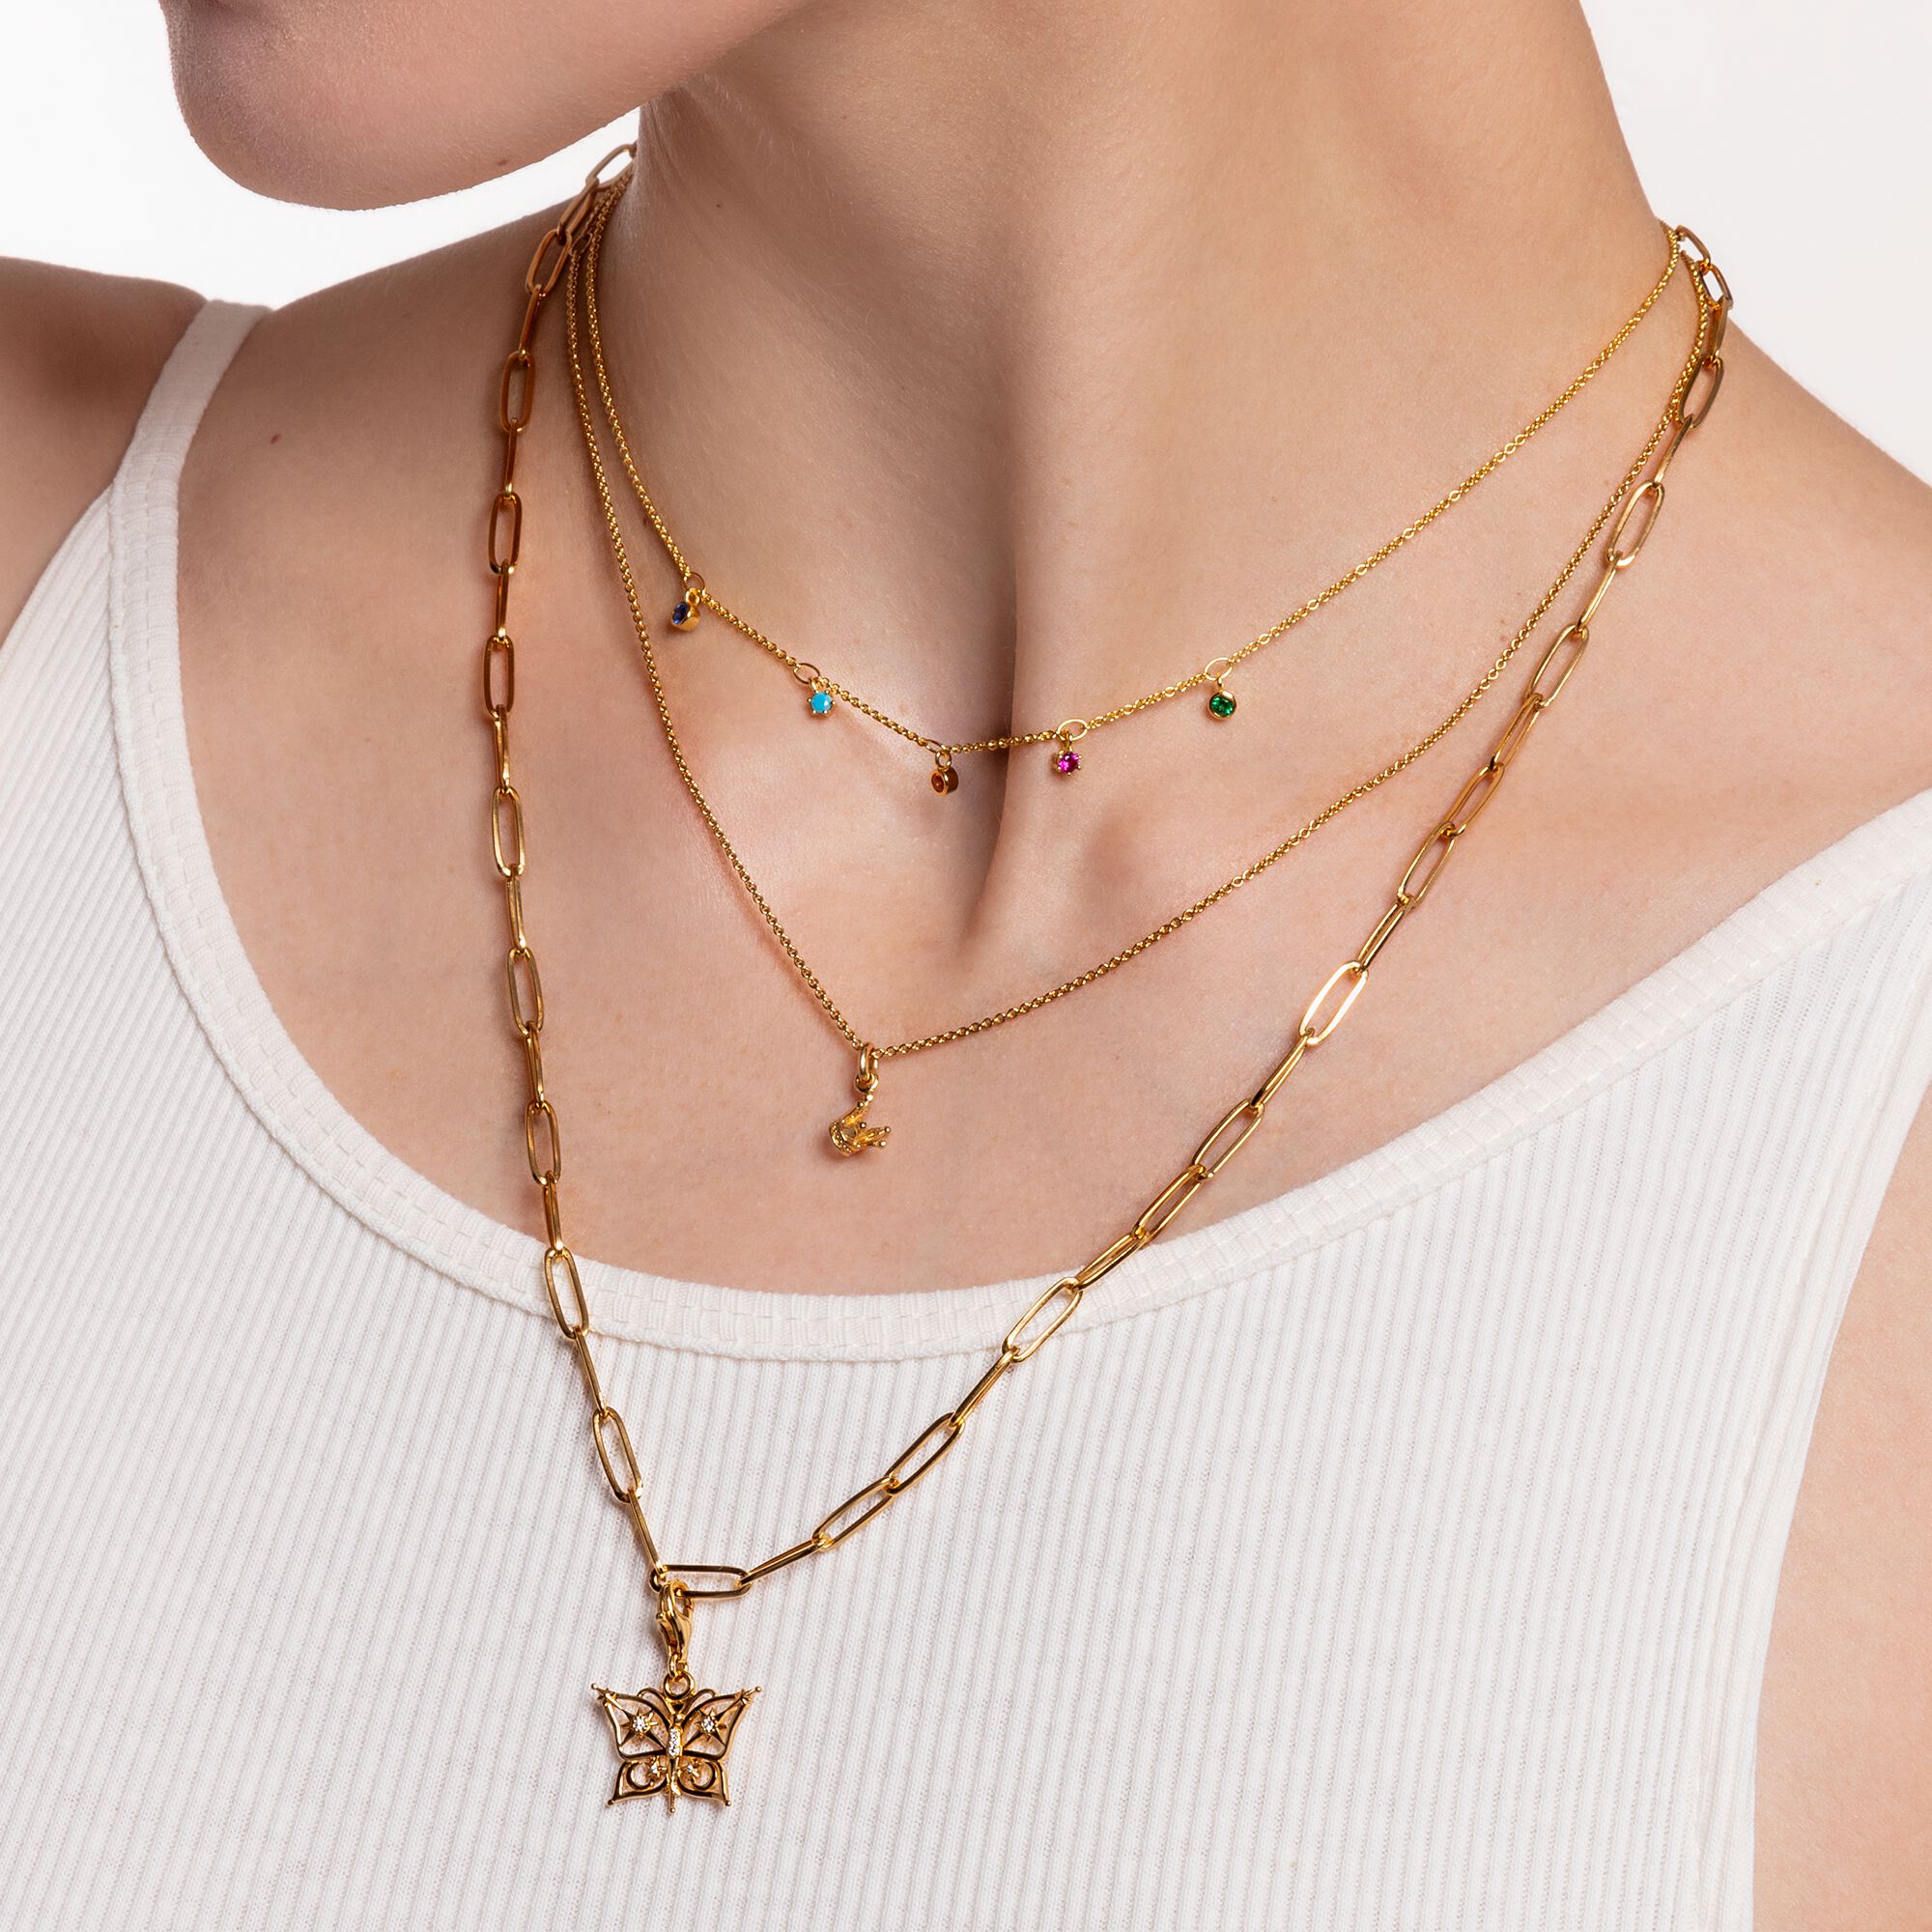 Damen Halskette Gold mit Strass-Steine Blatt Anhänger Kette 18